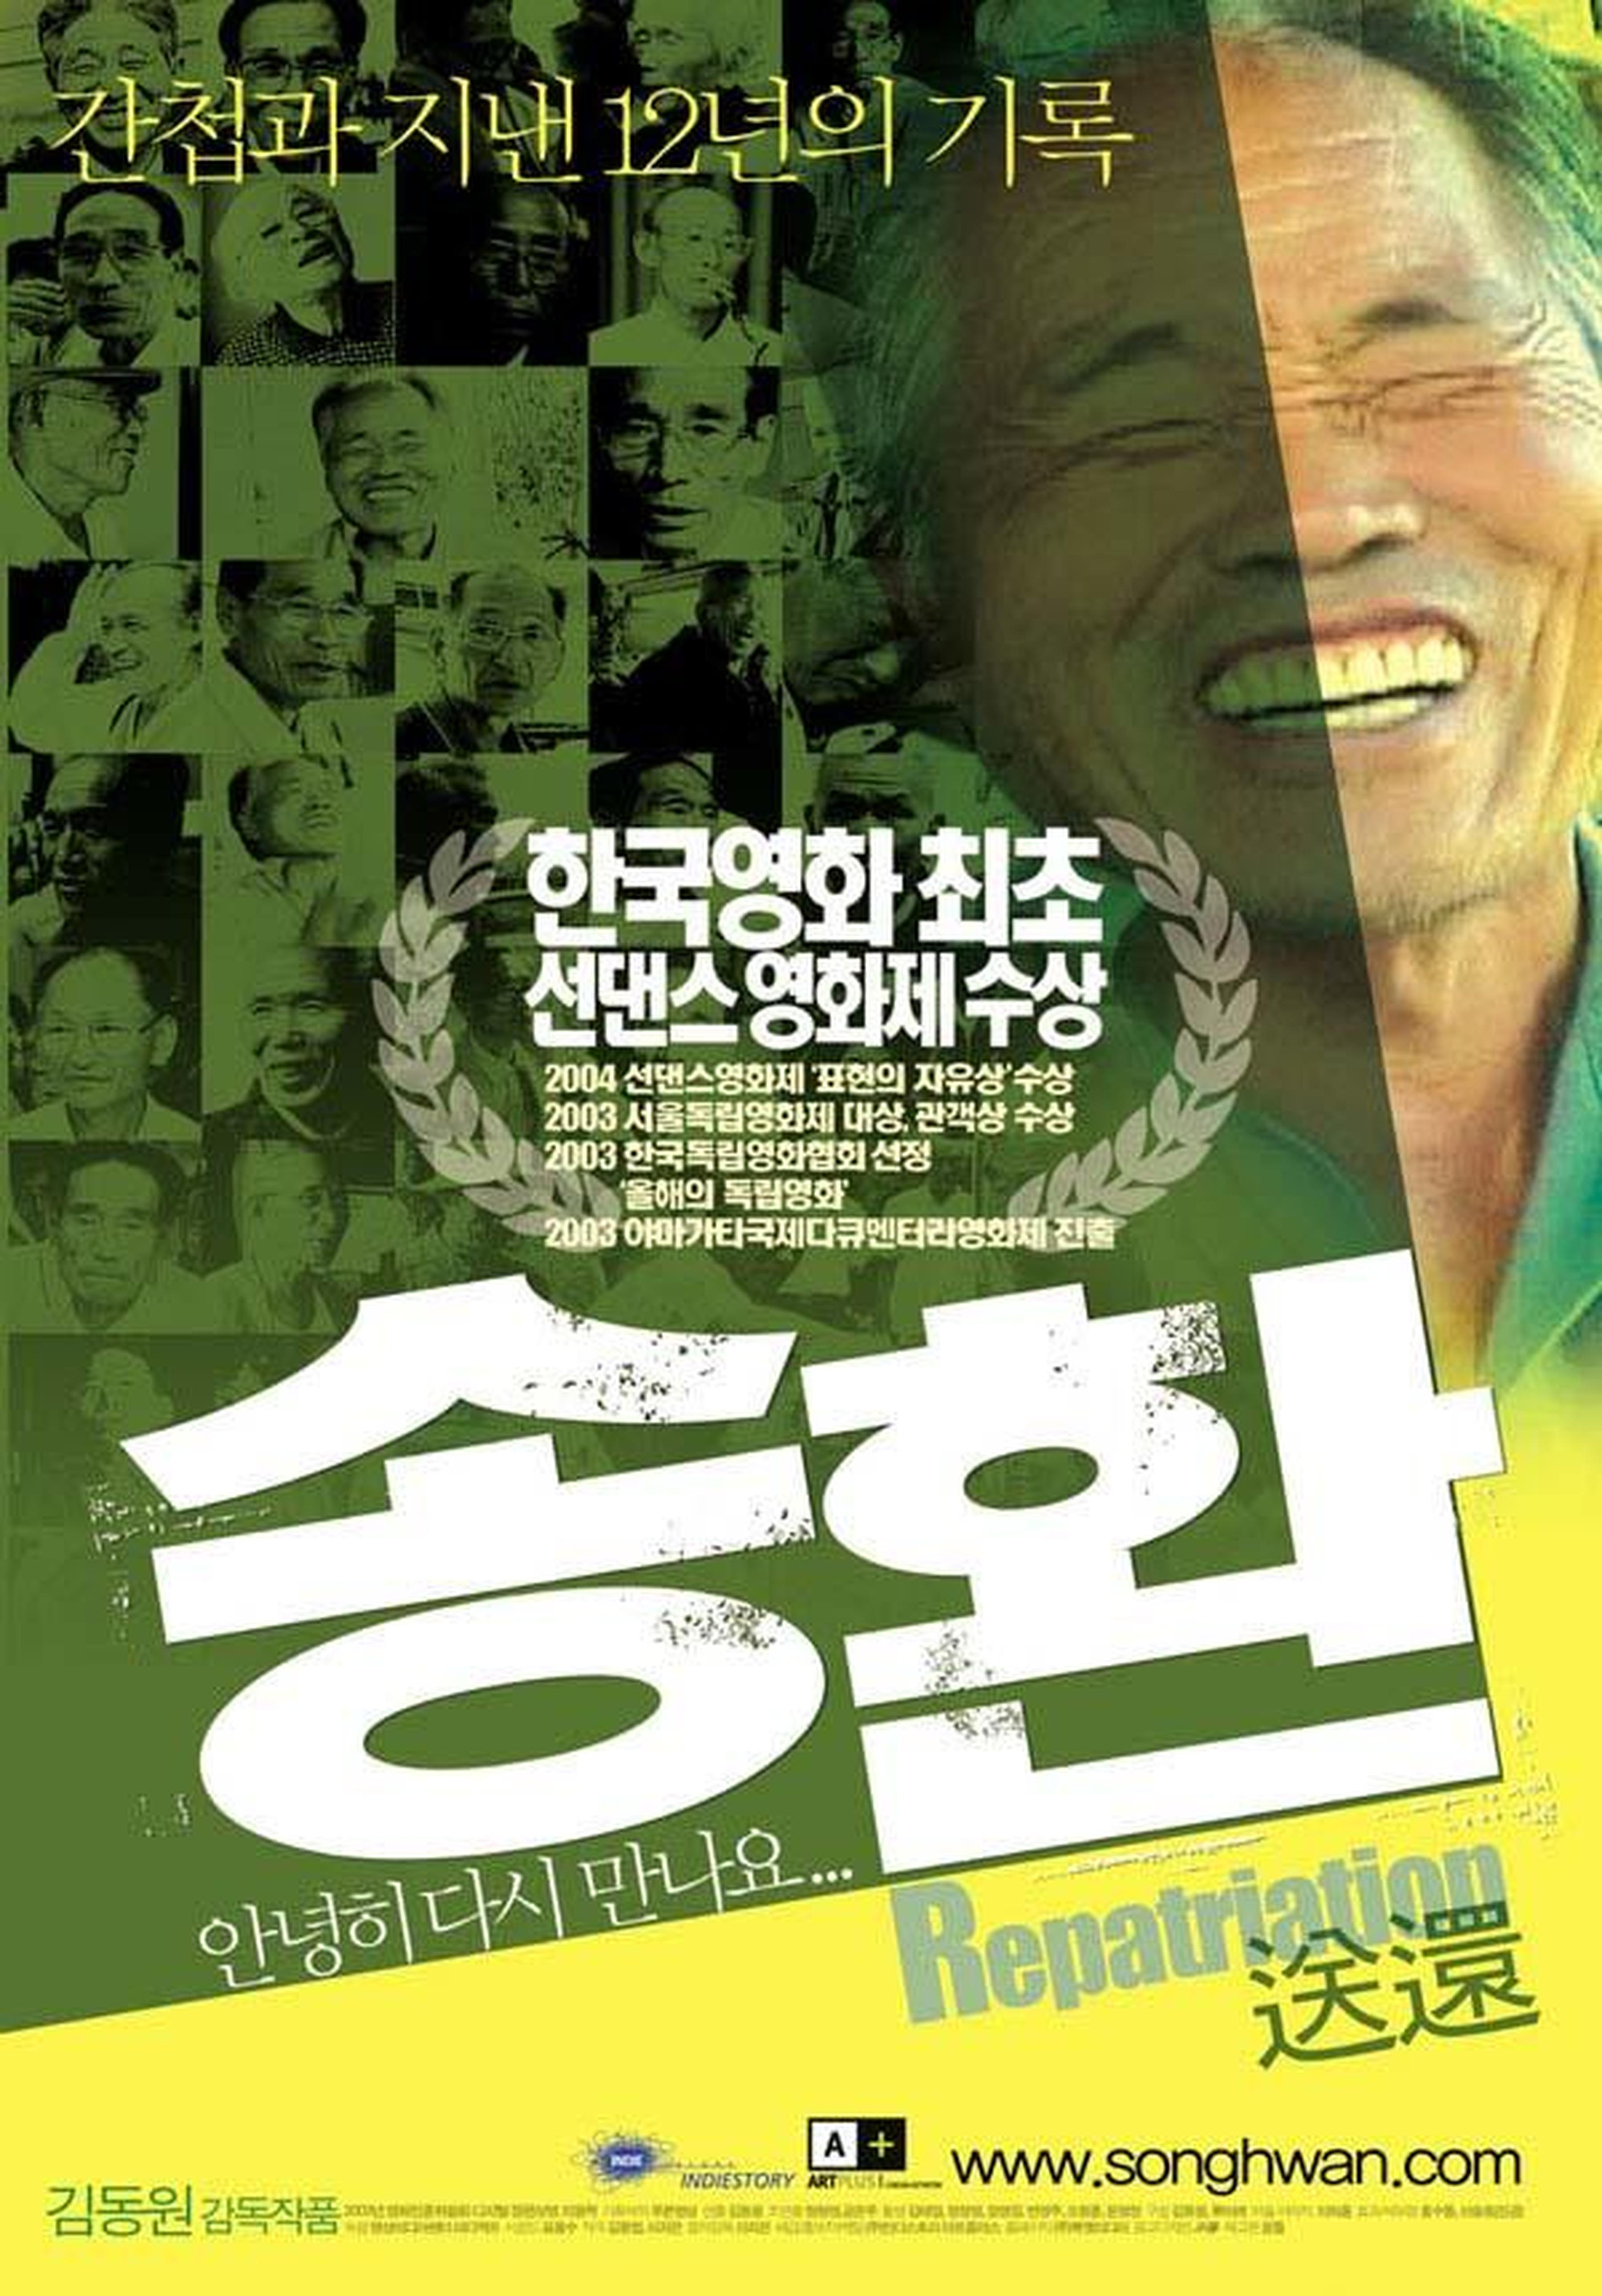 【2000-2010】《送还》 (2003)纪录片导演金东元。获得圣丹斯电影节自由表现奖。一部讲述北朝鲜人到韩国进行间谍活动的影片，同时也反映了上世纪30、40年代韩国的监狱状况，以及韩国到北朝鲜的探亲活动。该影片在韩国长时间被列入禁片，2004年成为第9届釜山电影节参展影片。